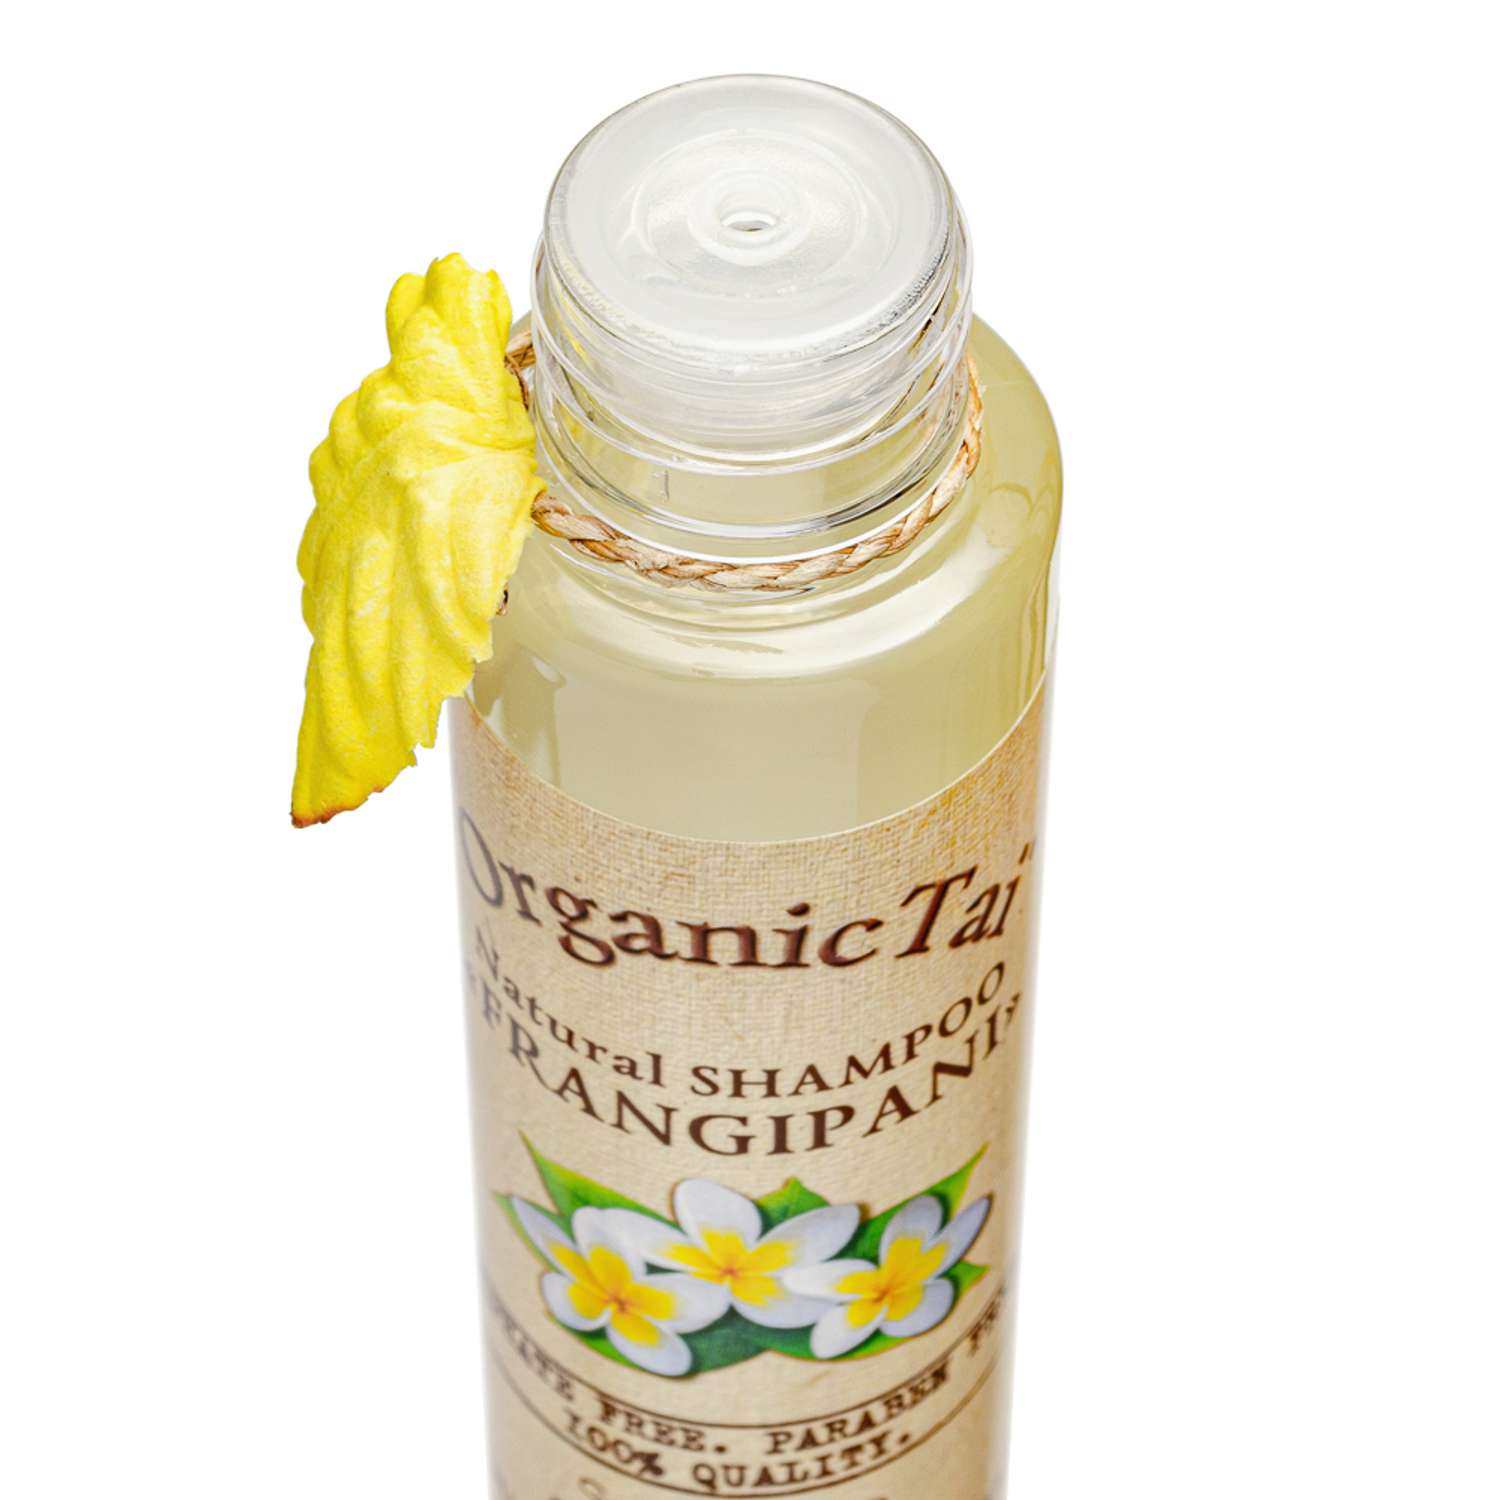 Натуральный шампунь для волос OrganicTai бессульфатный Франжипани 100 мл - фото 3